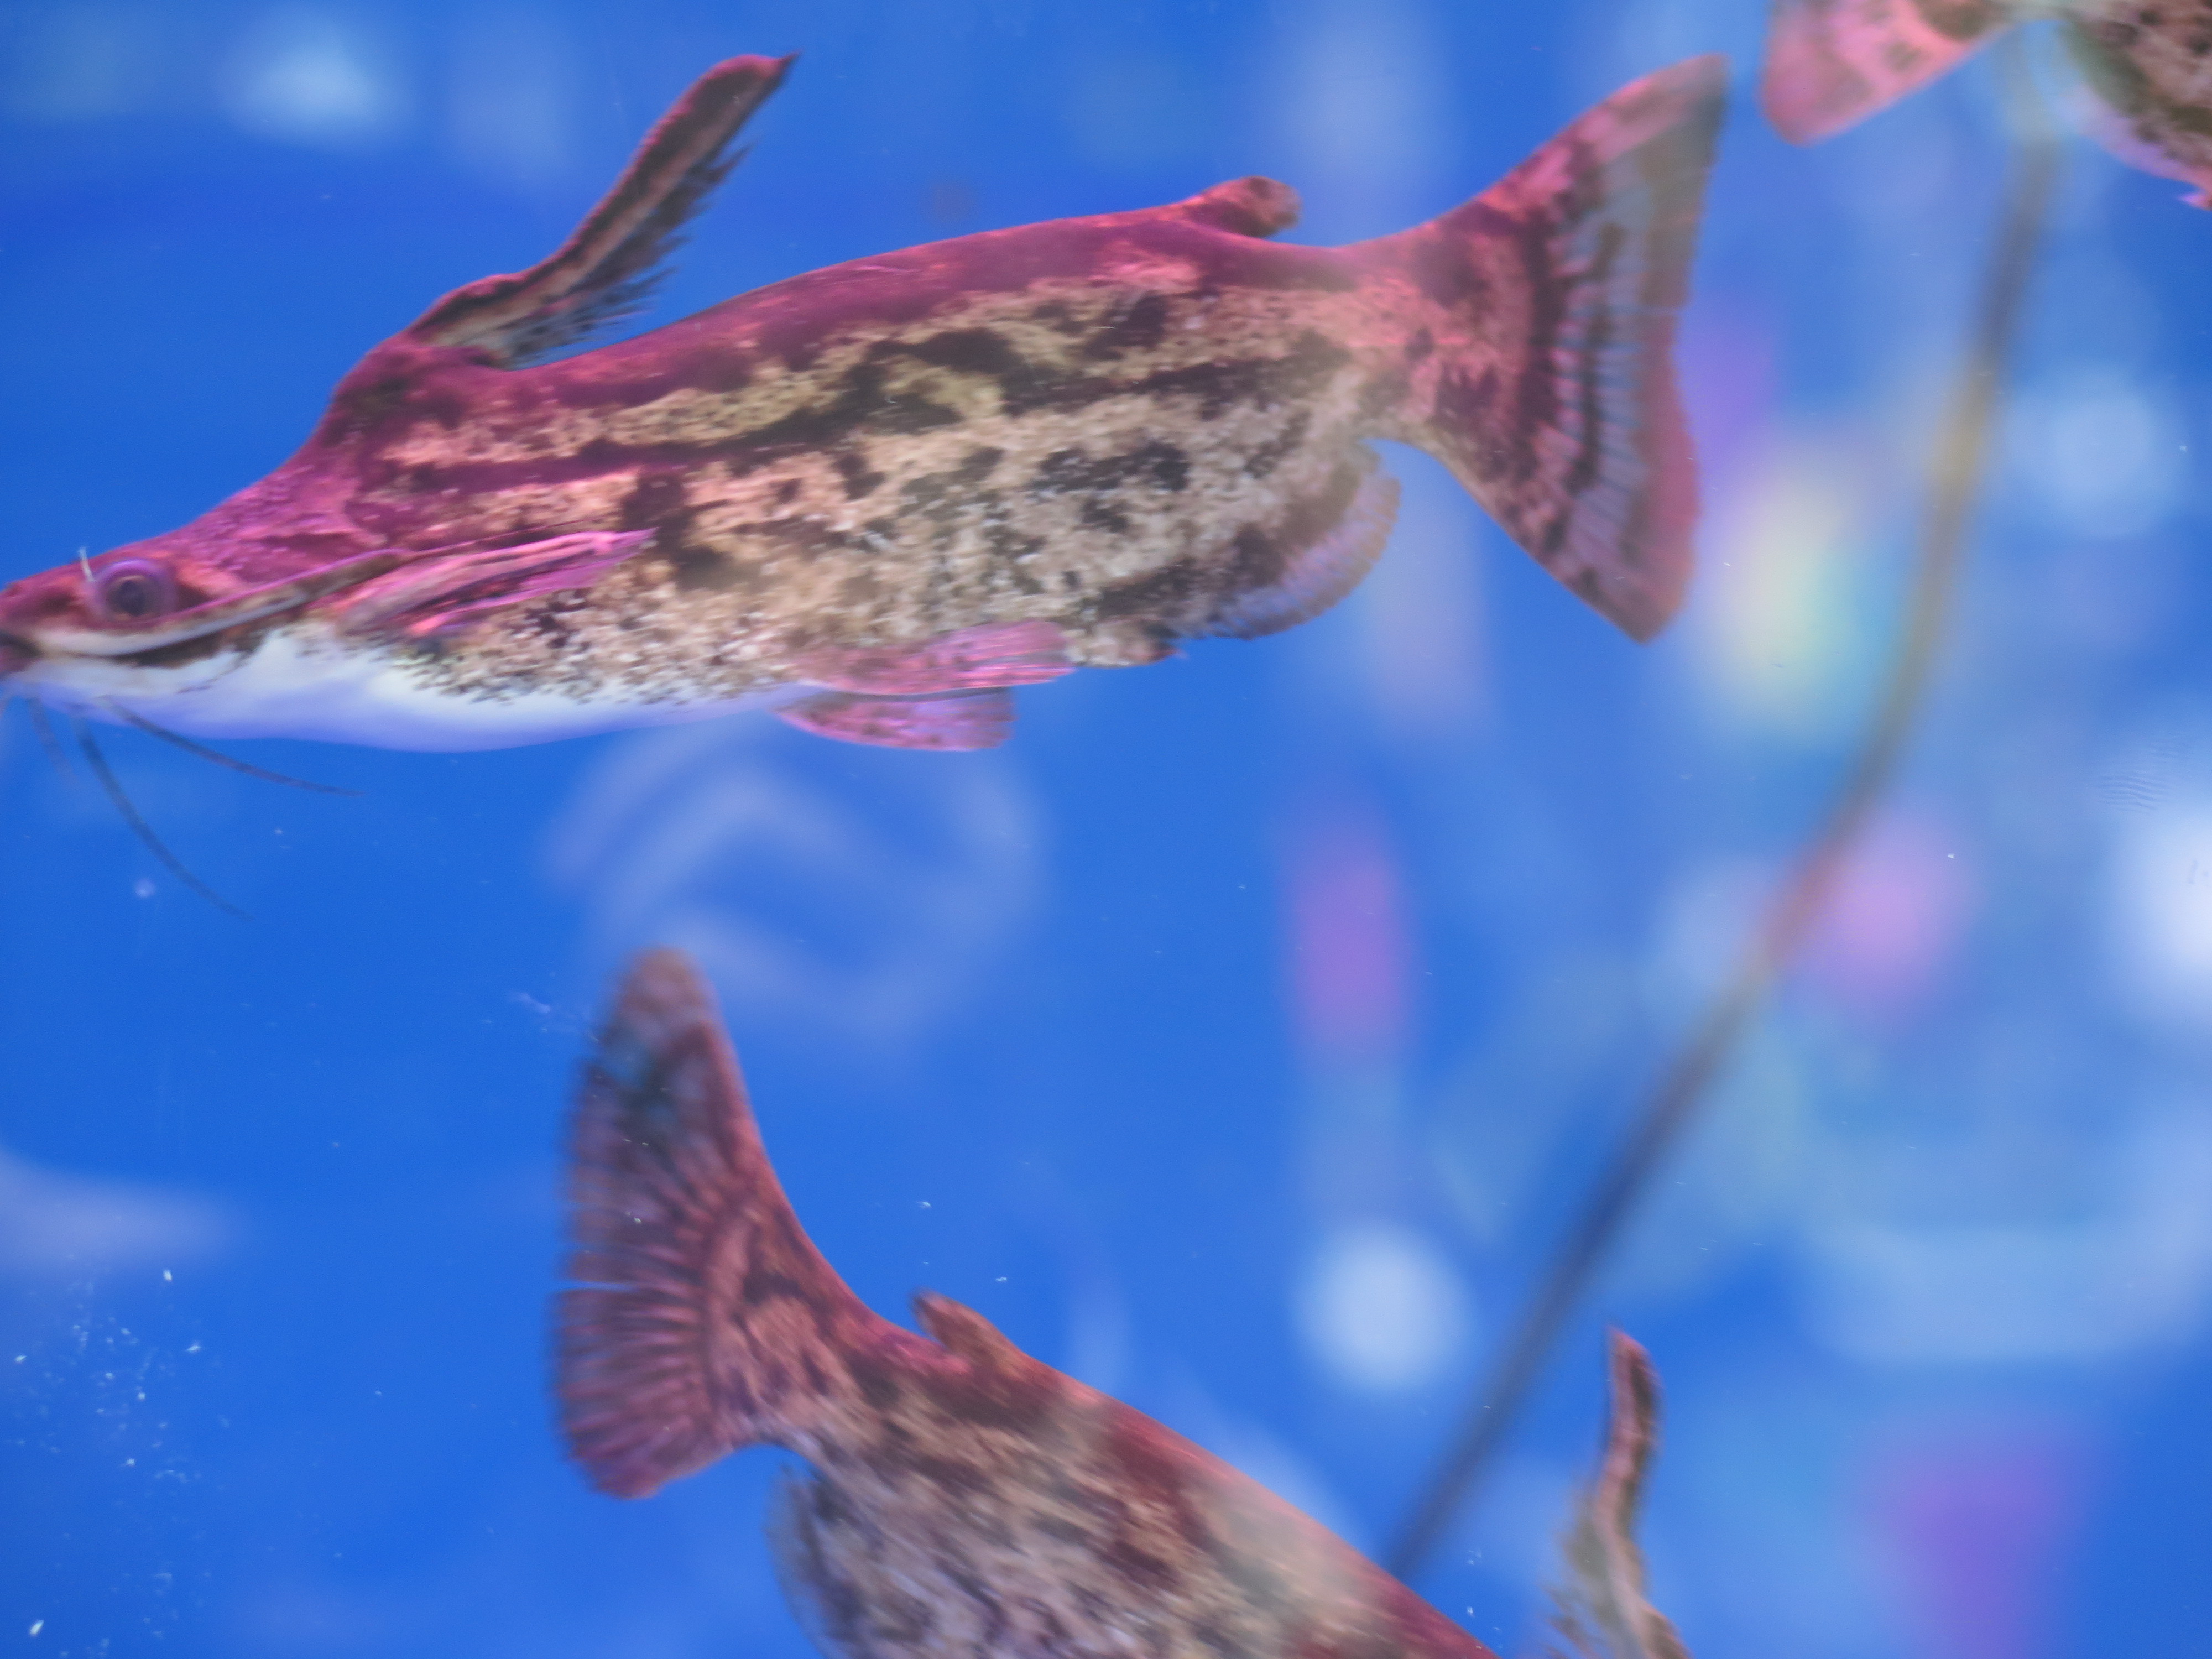 Bộ sưu tập cá tại Hội Hoa Xuân Đinh Dậu 2017 sẽ khiến bạn ngạc nhiên và ấn tượng. Từ những con cá đặc biệt có màu sắc xa hoa cho đến những con cá to lớn sẽ giúp bạn khám phá thế giới đầy màu sắc và những điều thú vị.